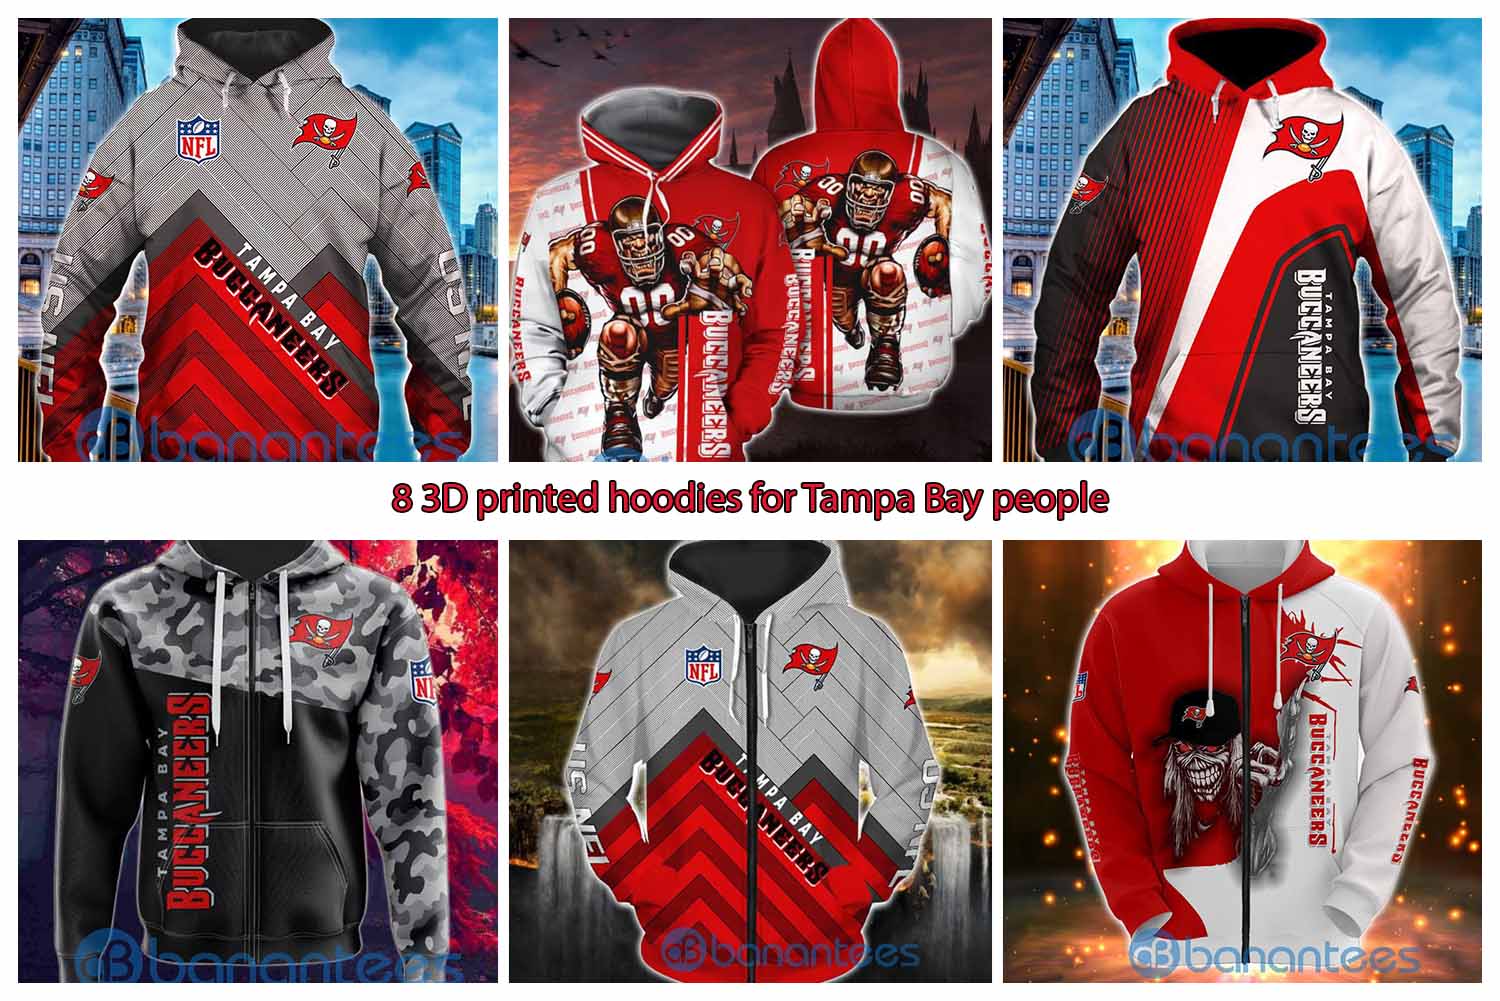 8 3D printed hoodies for Tampa Bay people